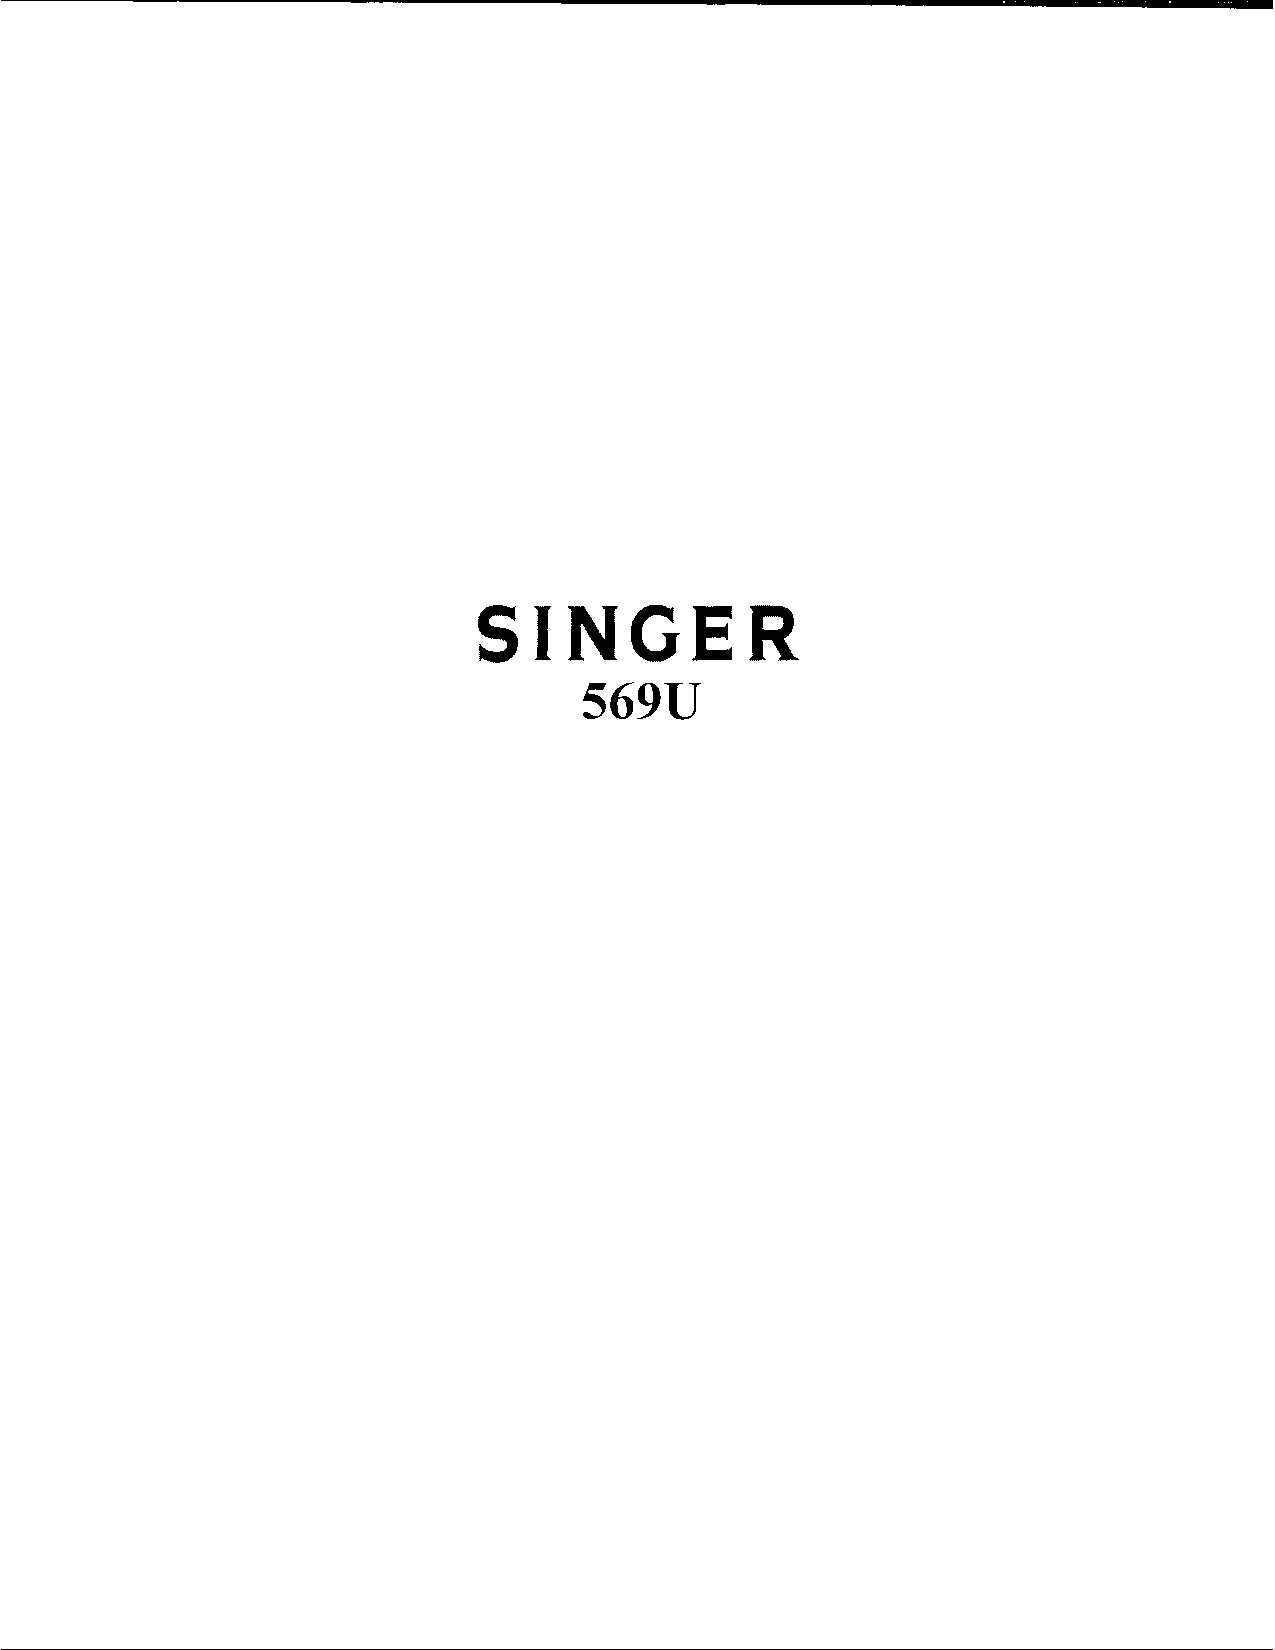 Singer 569U User Manual